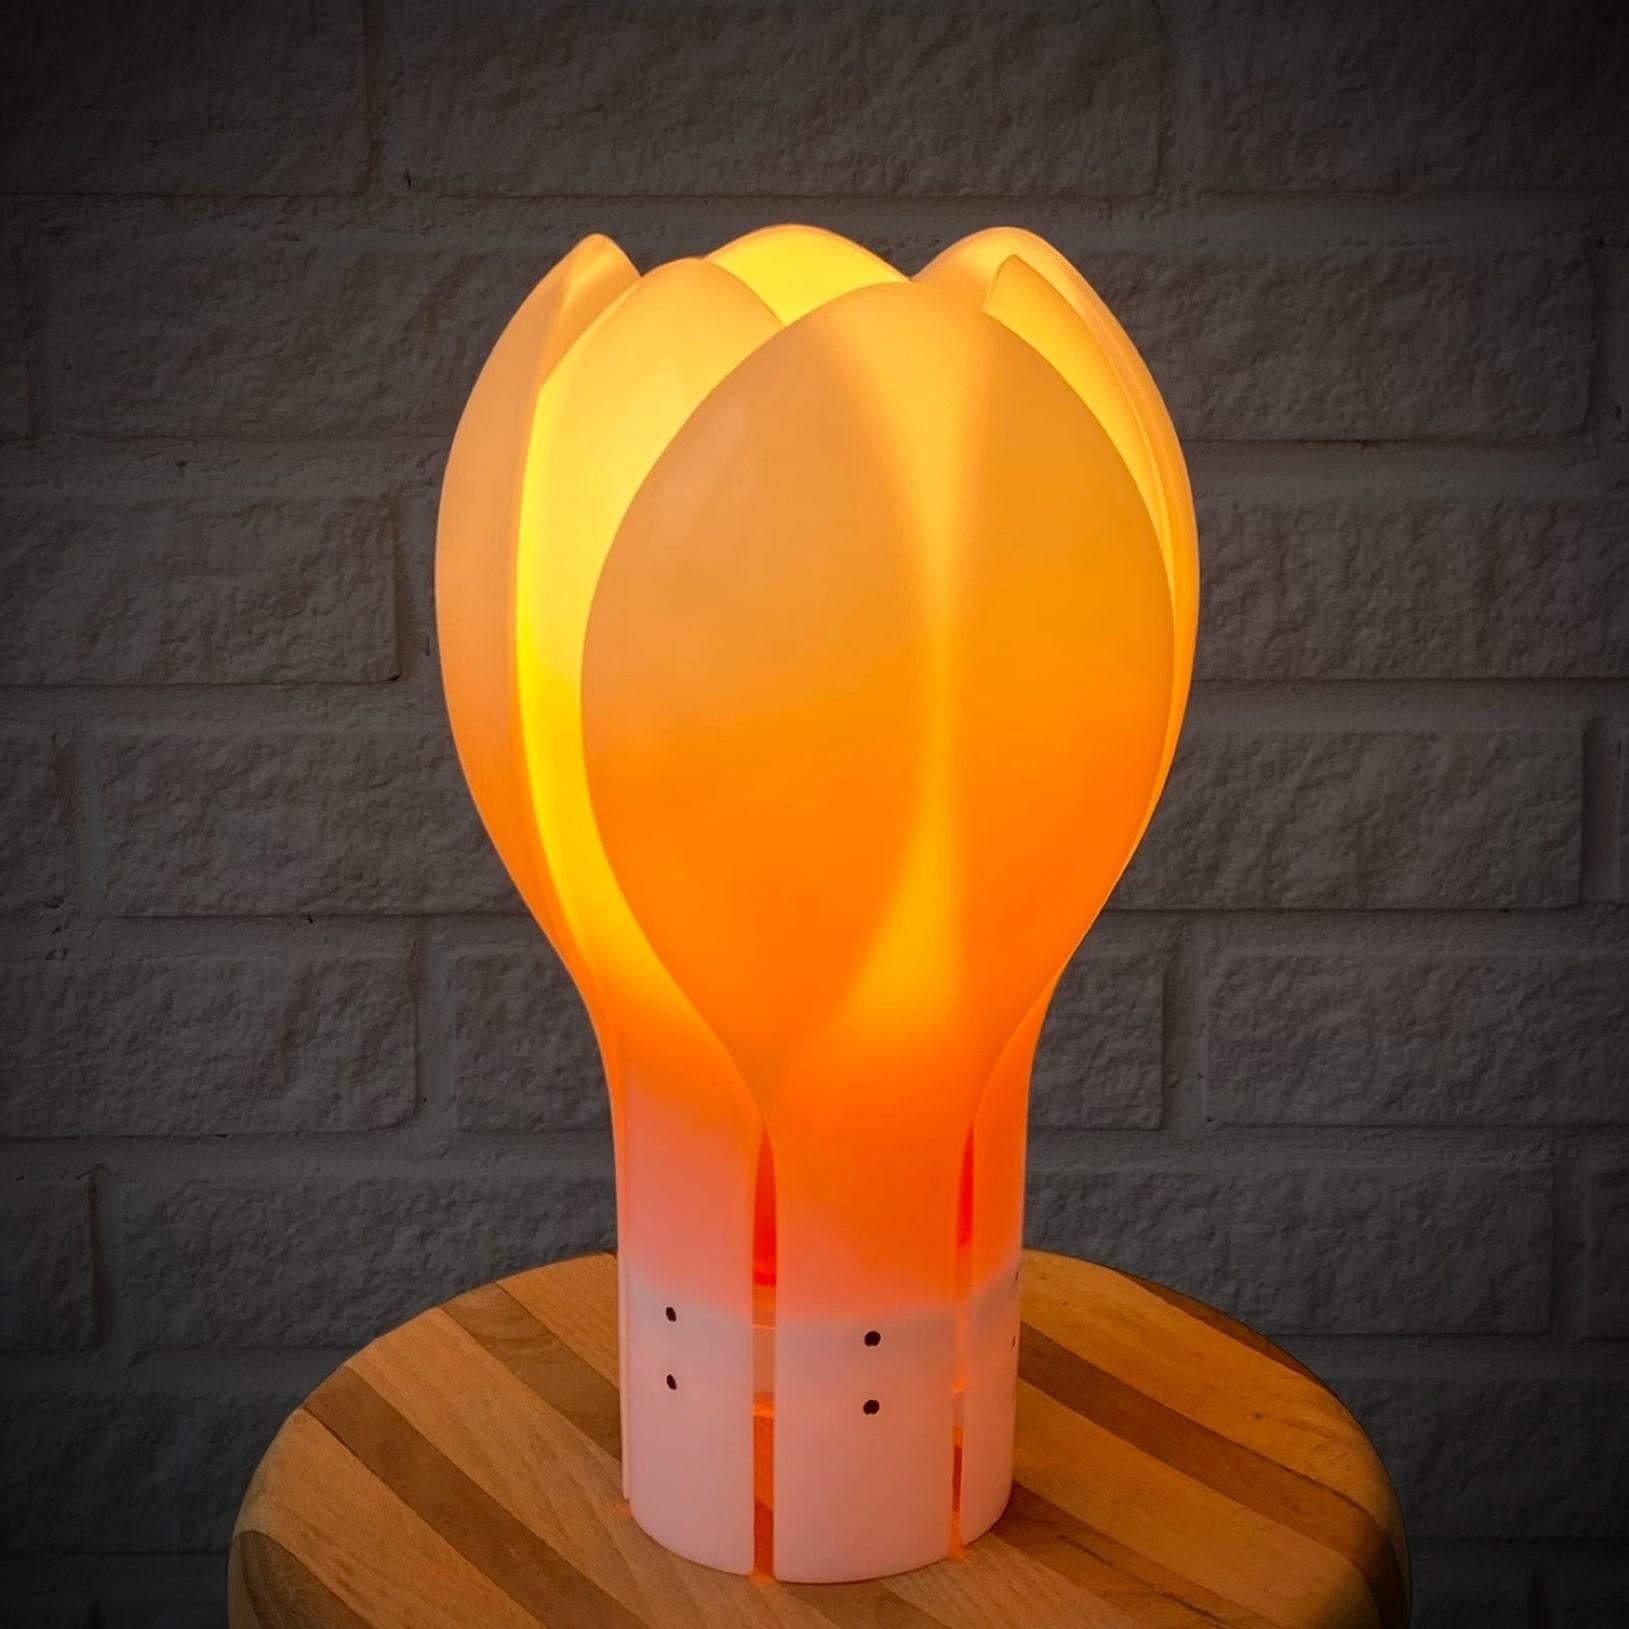 Lampe de table 'Tulip' conçue dans les années 1970 par l'architecte suédois Yngve Ekström. Fabriqué en acrylique blanc avec des détails transparents. Elle est dotée d'une teinte intérieure orange qui confère à la lumière un ton chaud et confortable.